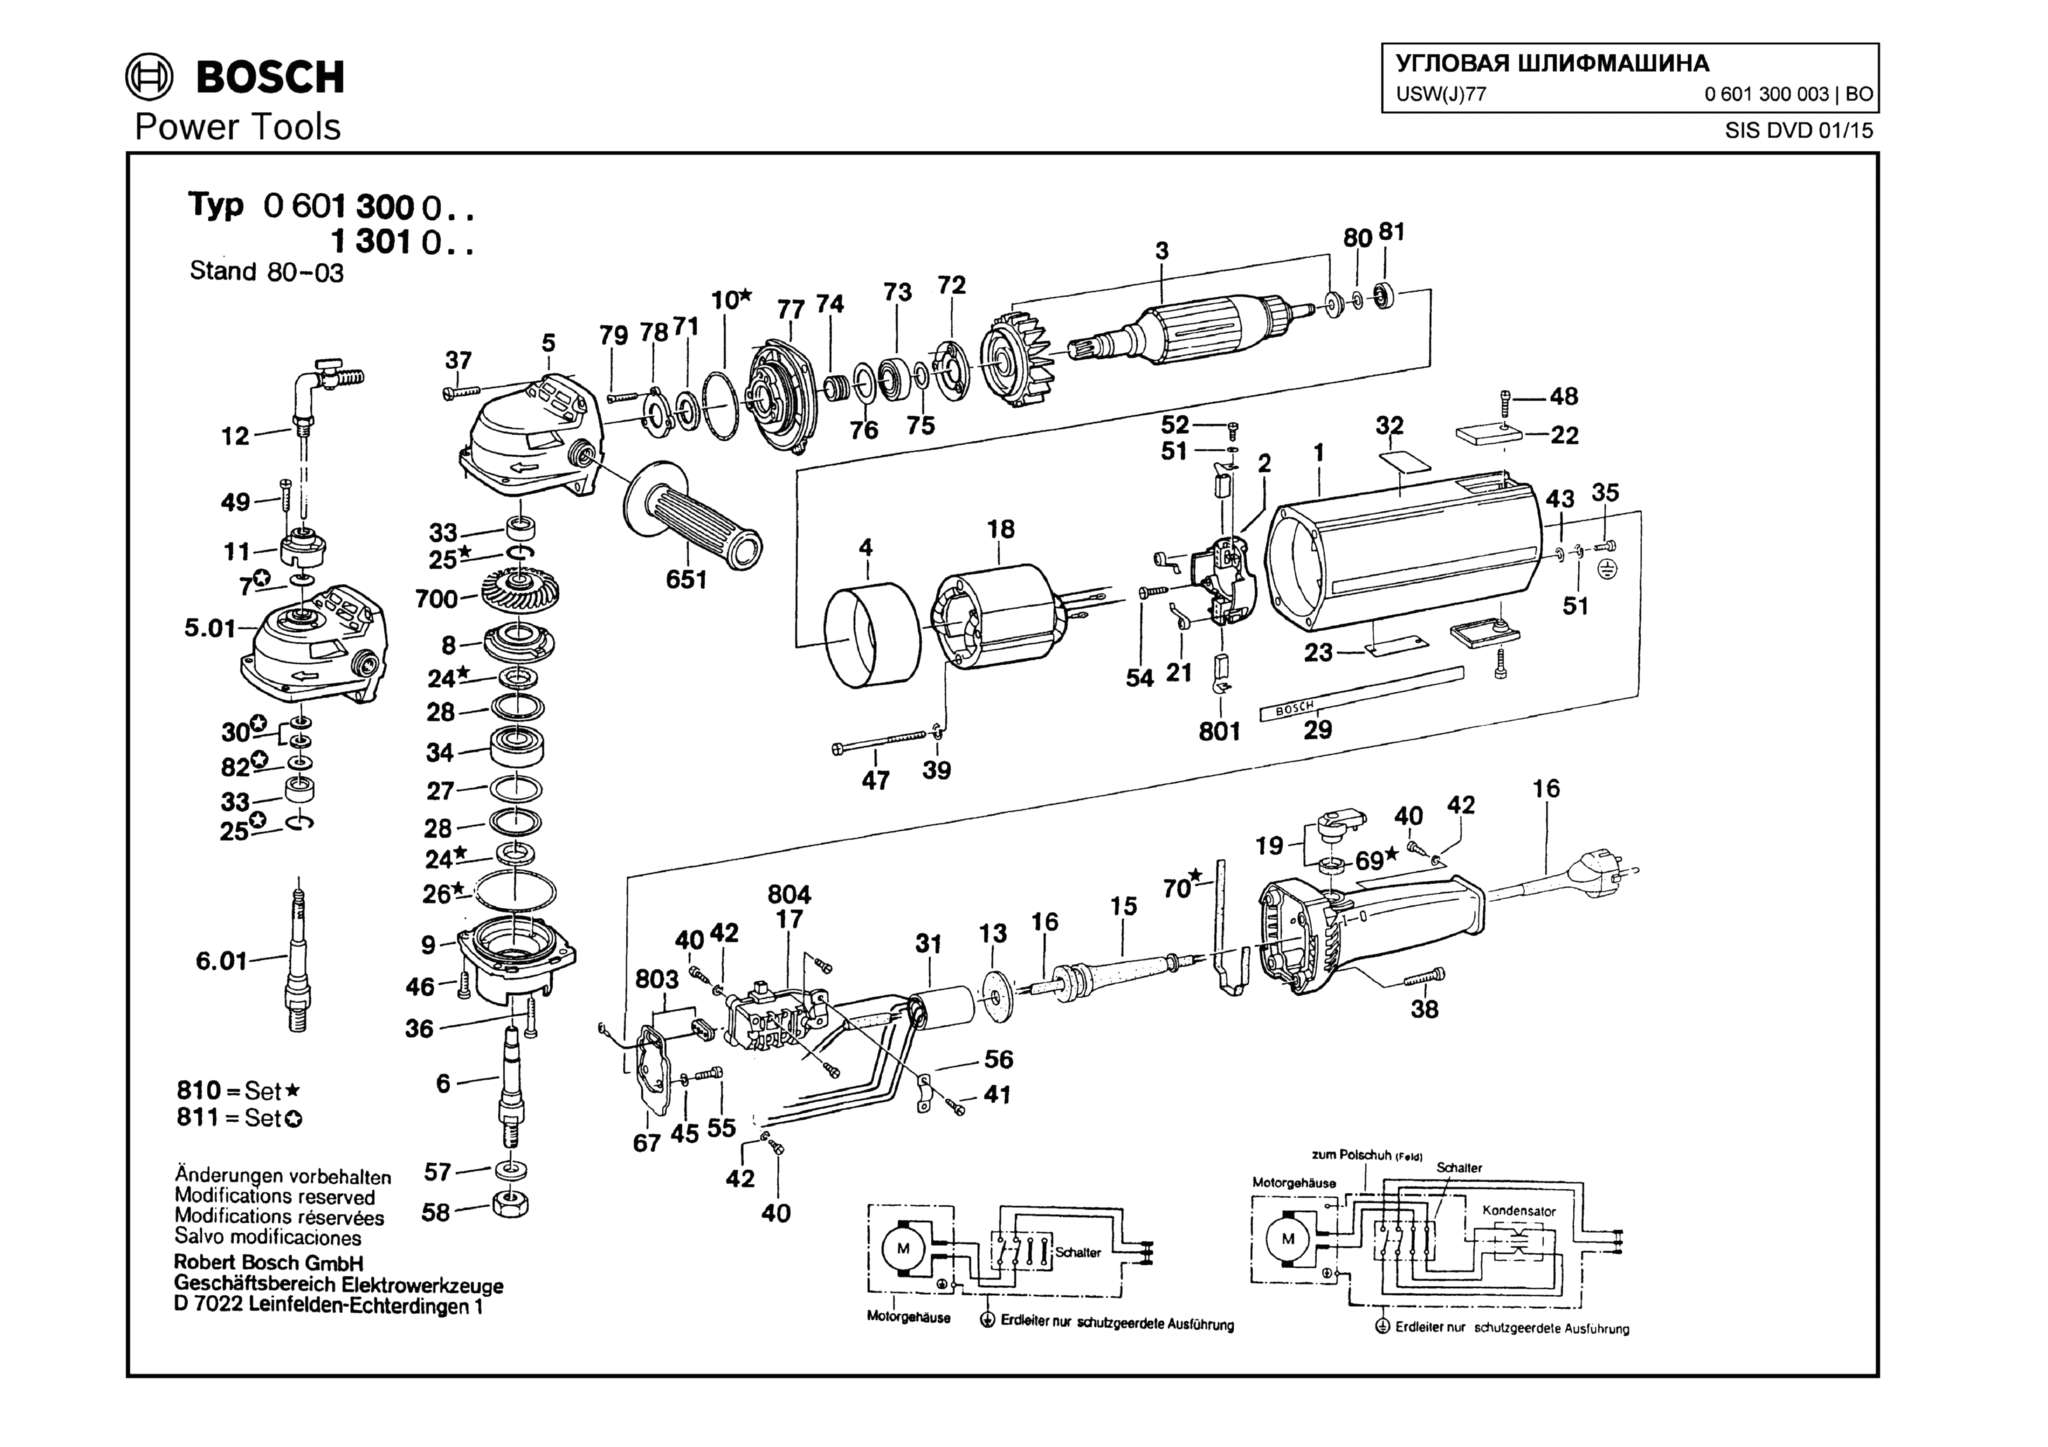 Запчасти, схема и деталировка Bosch USW(J)77 (ТИП 0601300003)